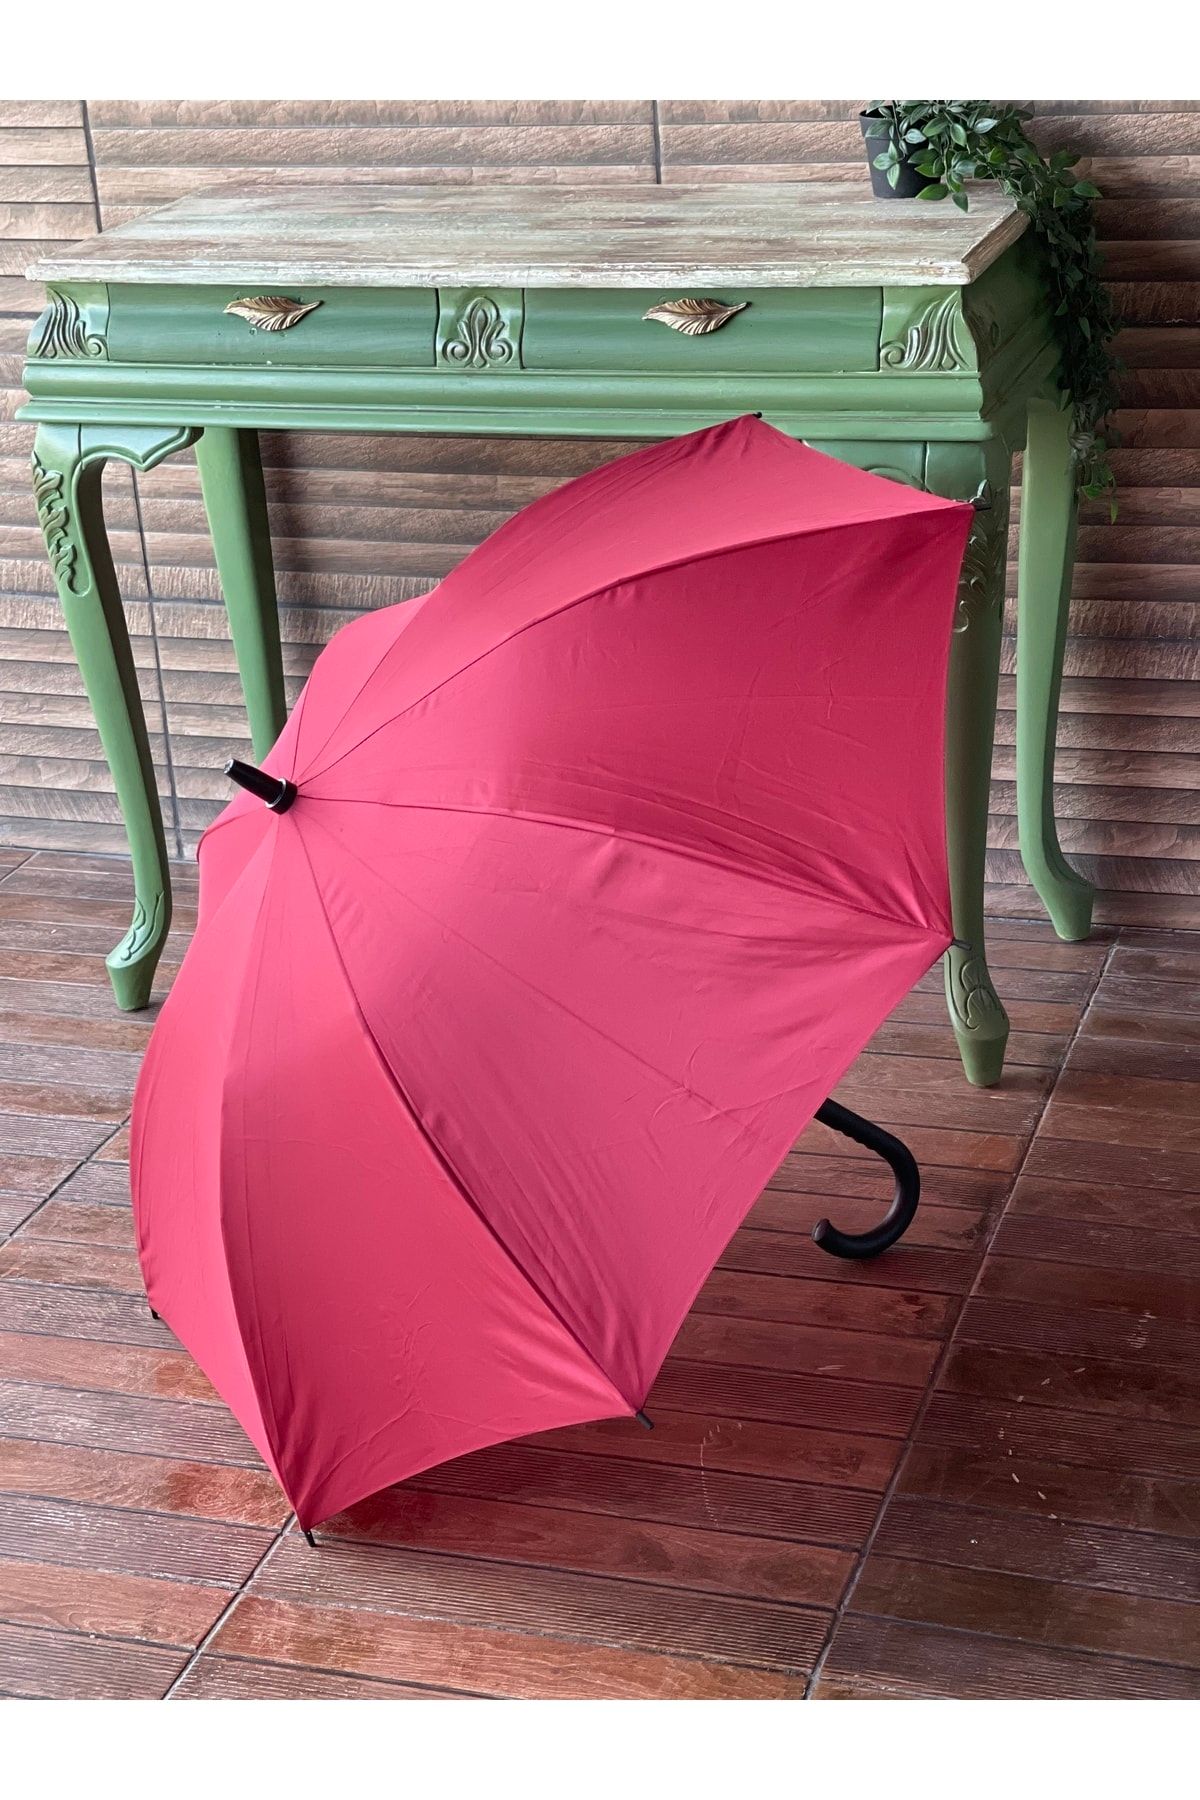 Sunlife 8 Telli Otomatik Fiberglass Baston Bordo Renkli Yağmur Şemsiyesi